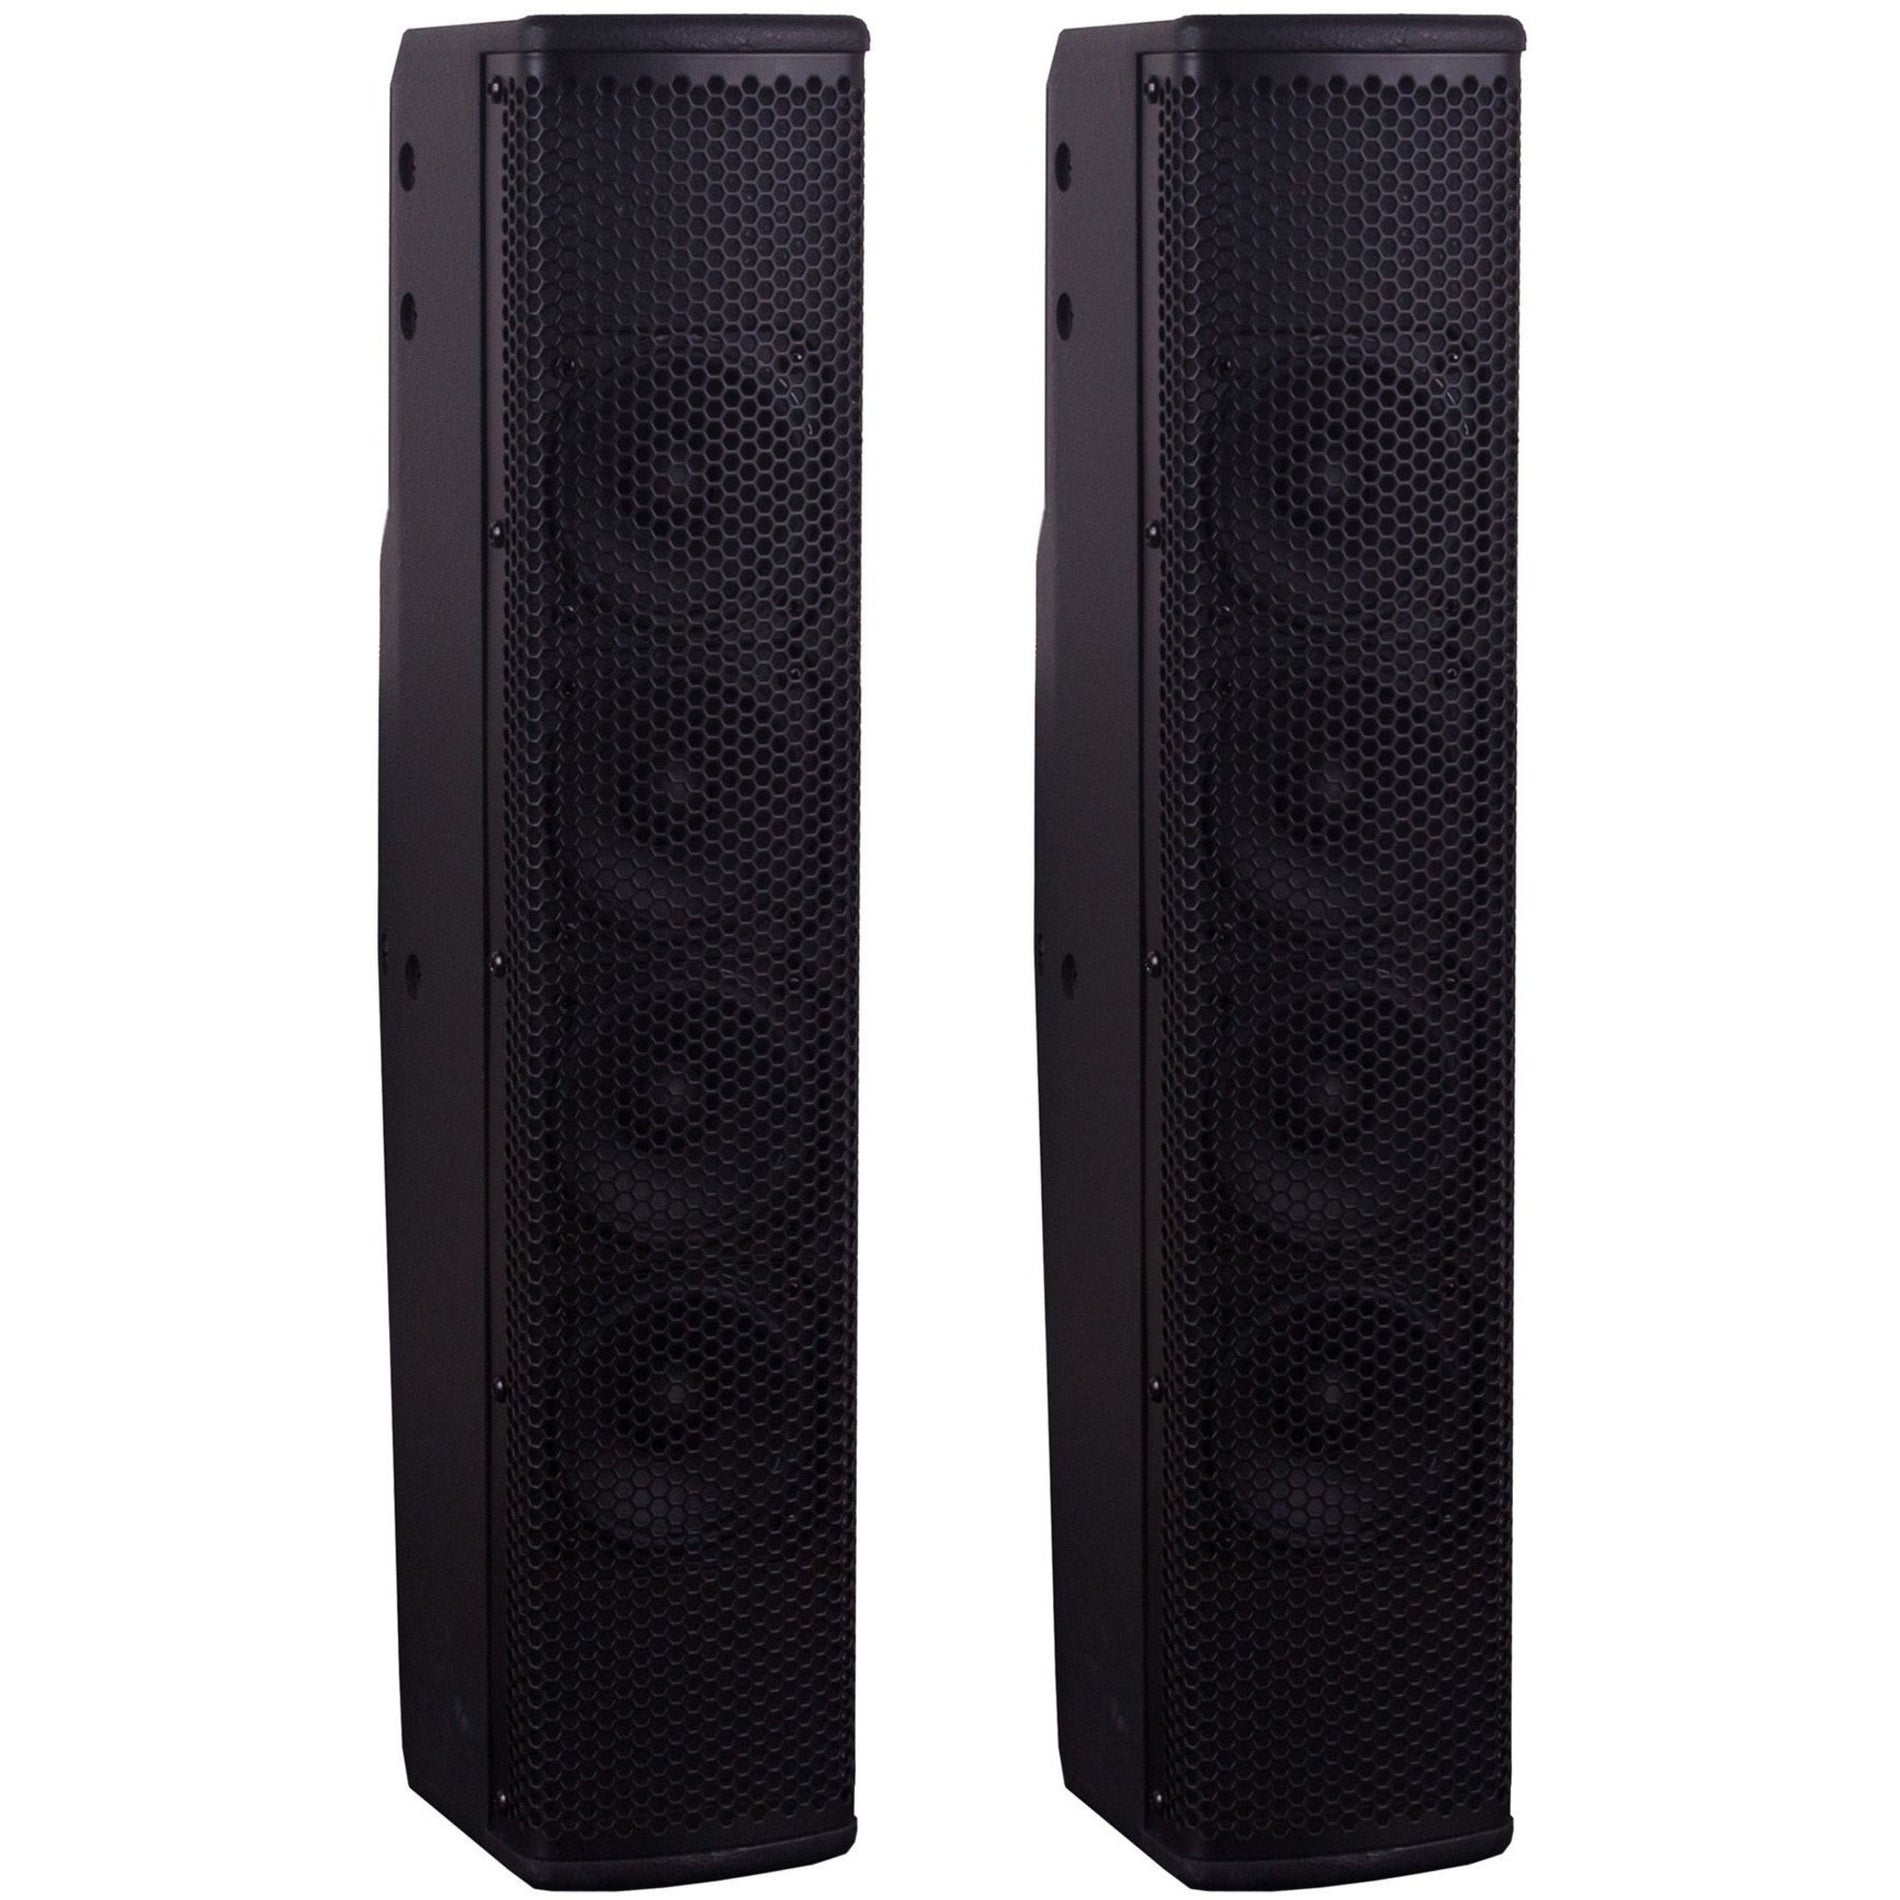 MuxLab 500220 Dante Two Column Speakers PoE, 60W - 2 Pack